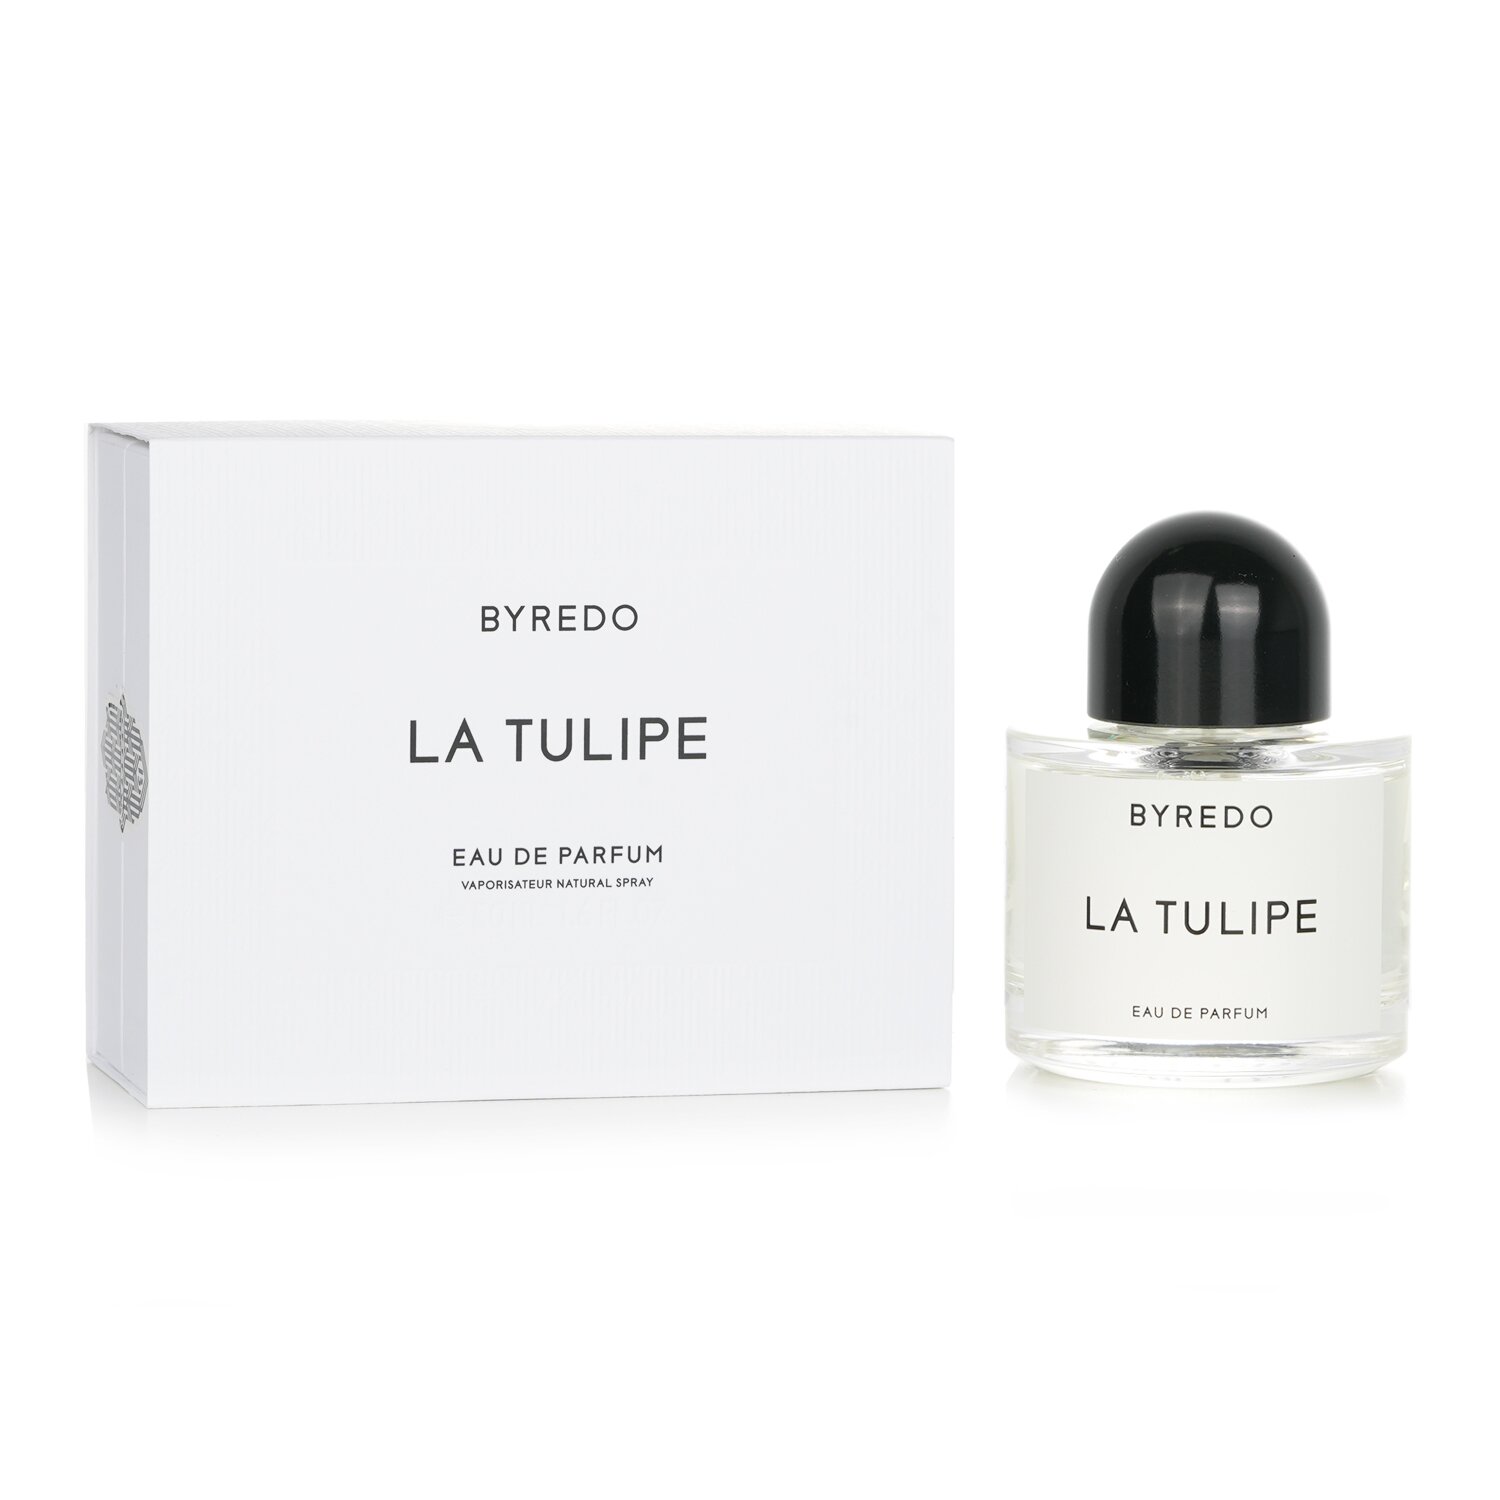 Byredo La Tulipe Eau De Parfum Spray 50ml/1.6oz